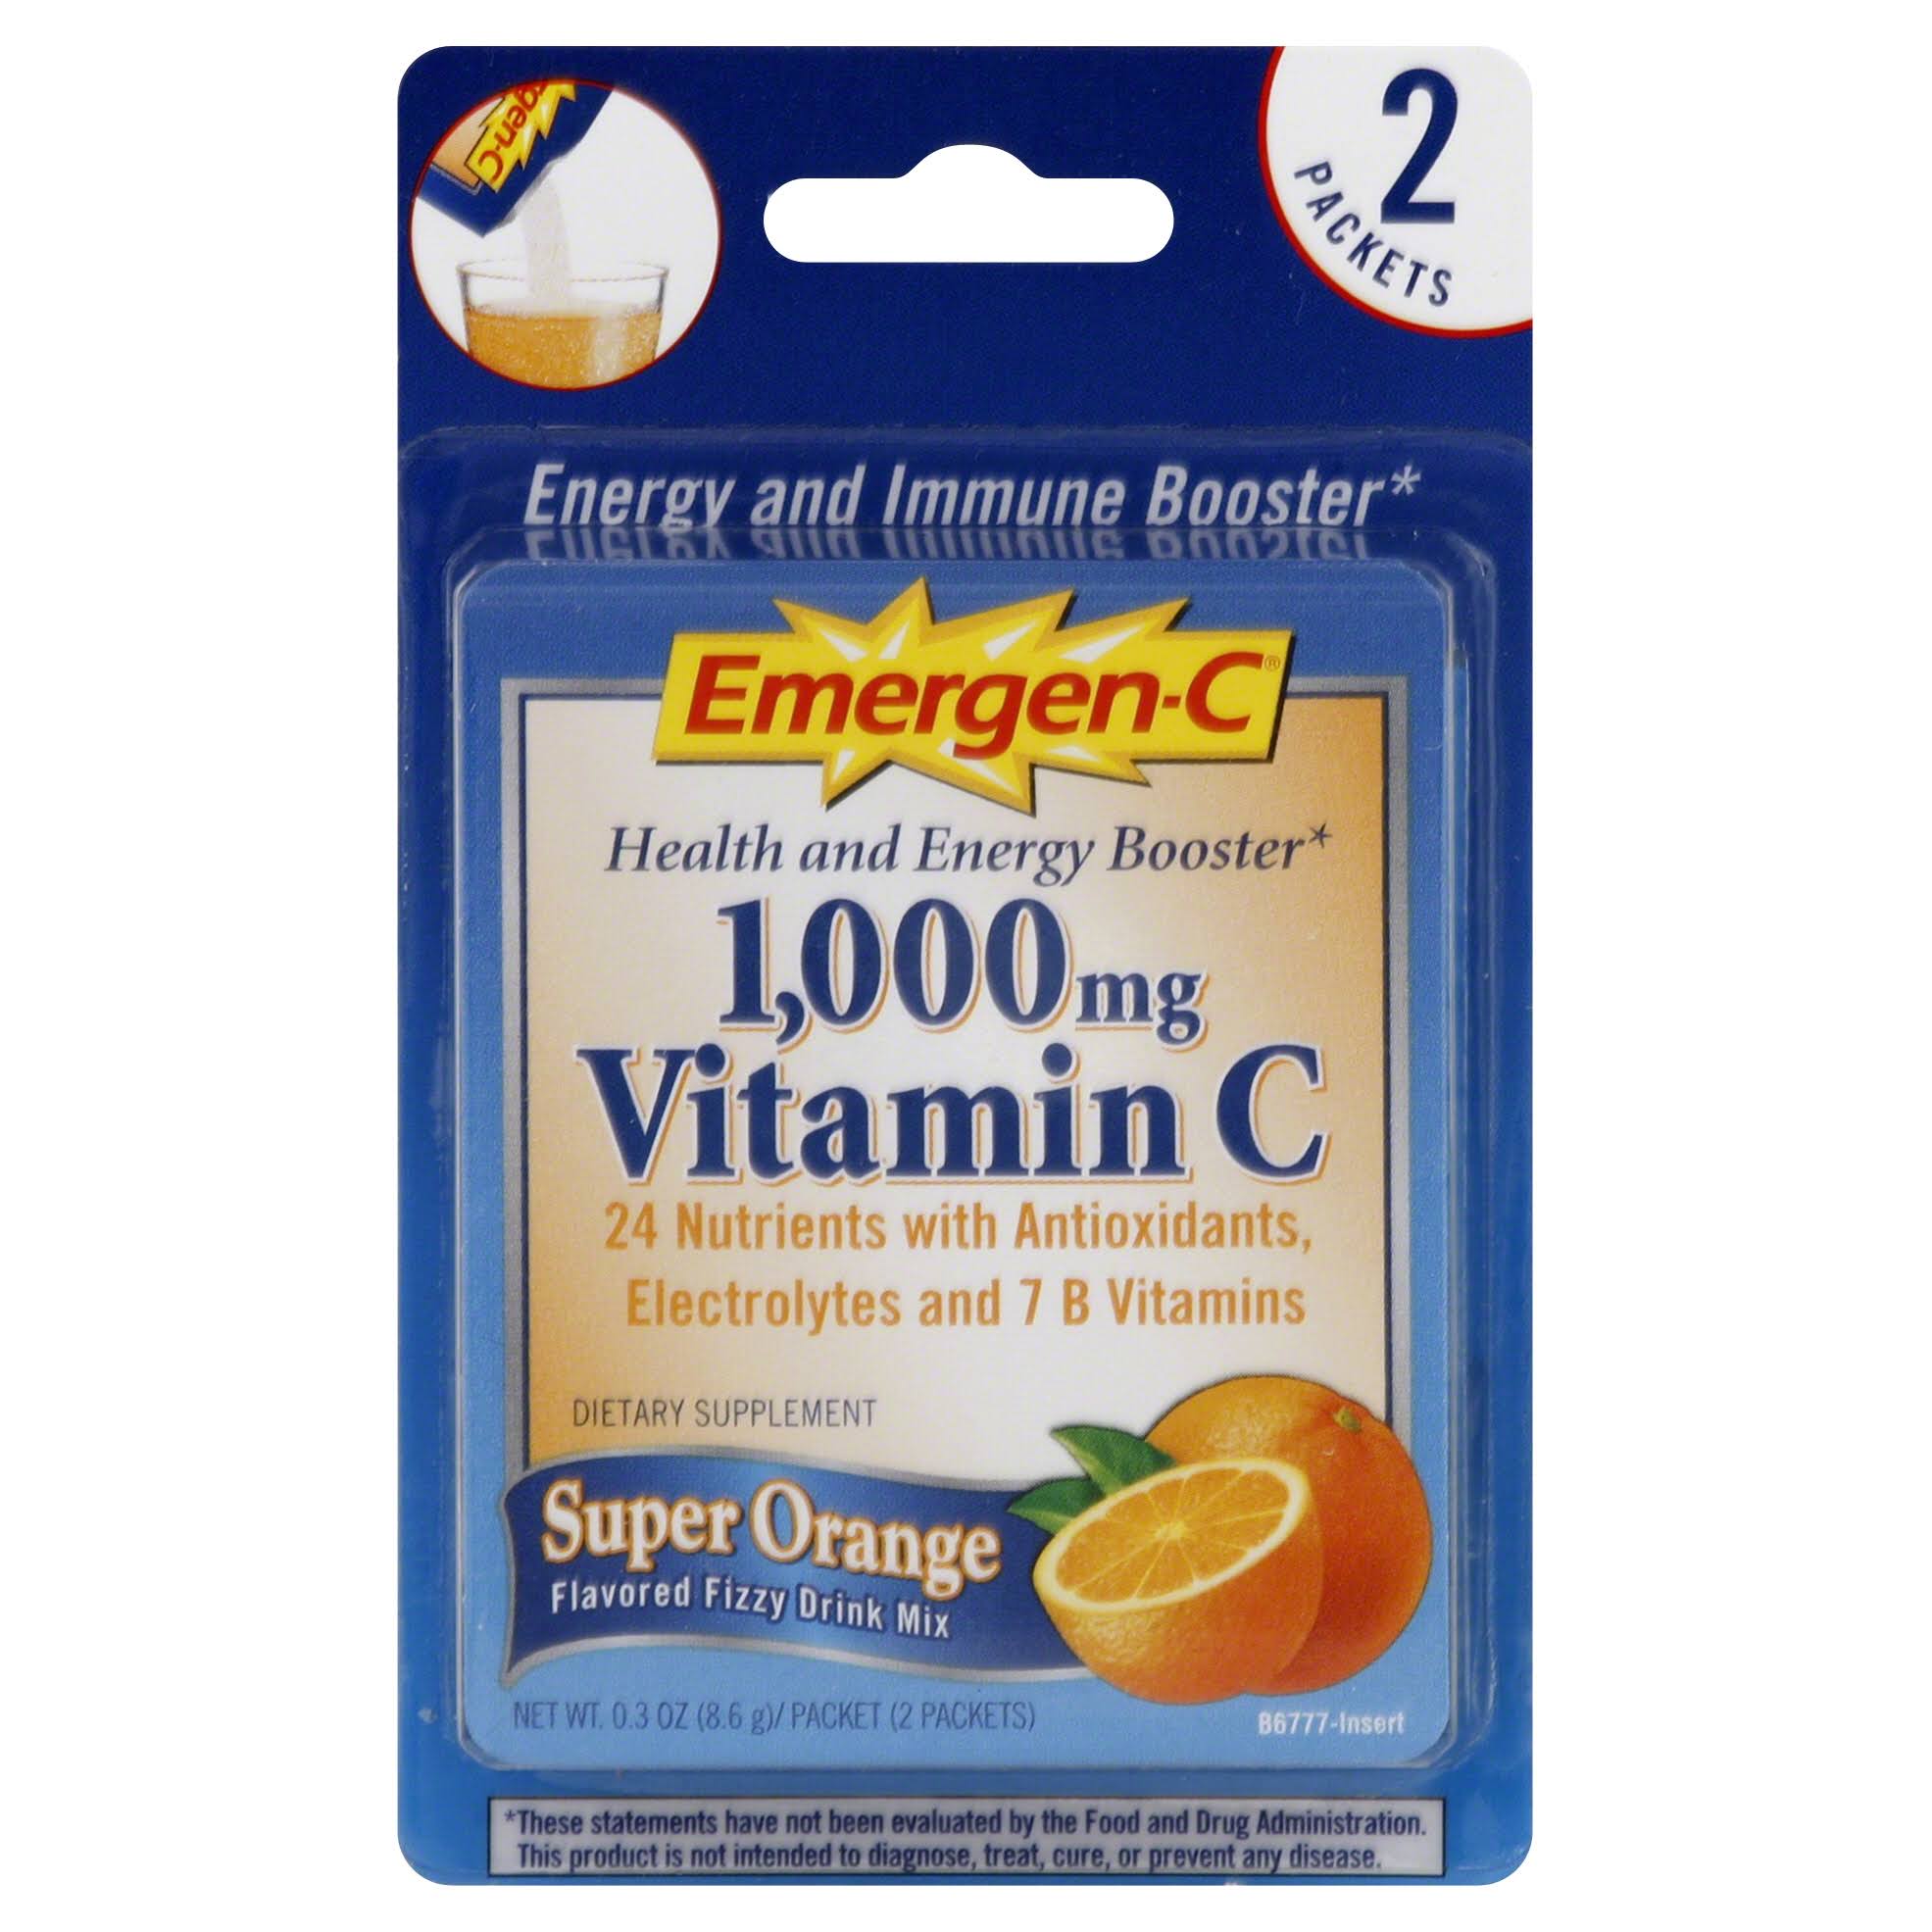 Emergen C Flavored Fizzy Drink Mix, Super Orange - 2 pack, 0.3 oz packets